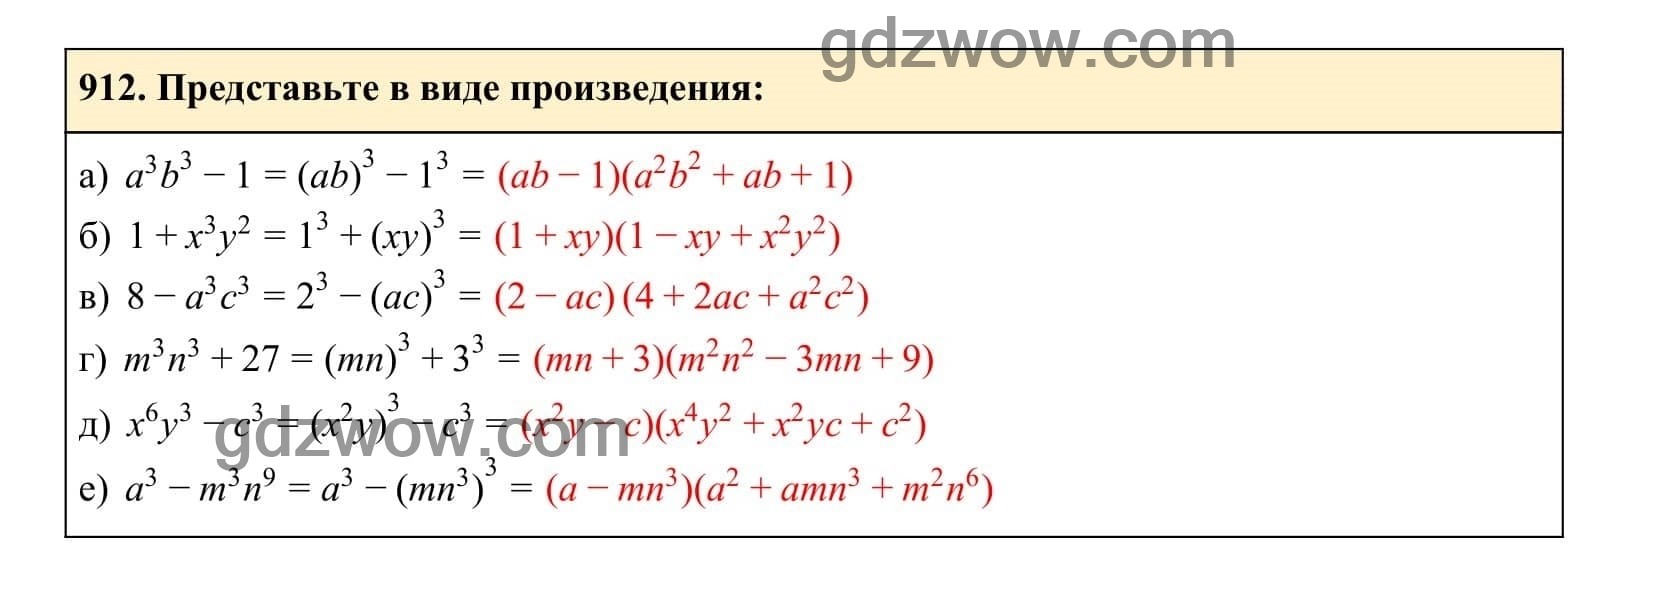 Упражнение 912 - ГДЗ по Алгебре 7 класс Учебник Макарычев (решебник) - GDZwow